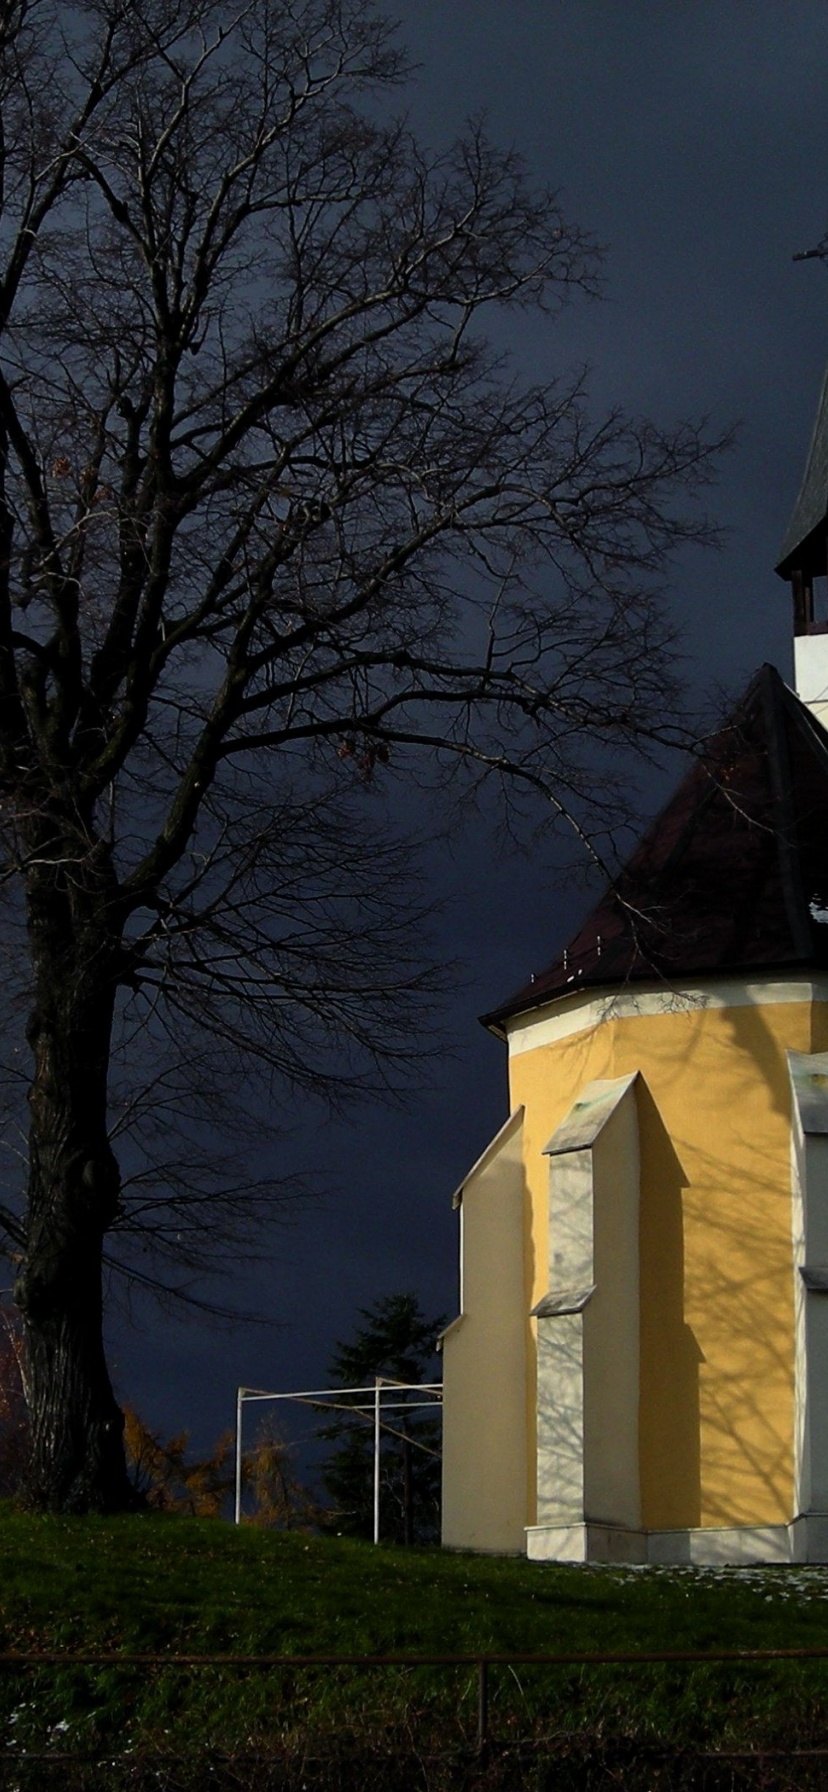 Chapel Pezinok Bratislava Region Slovakia